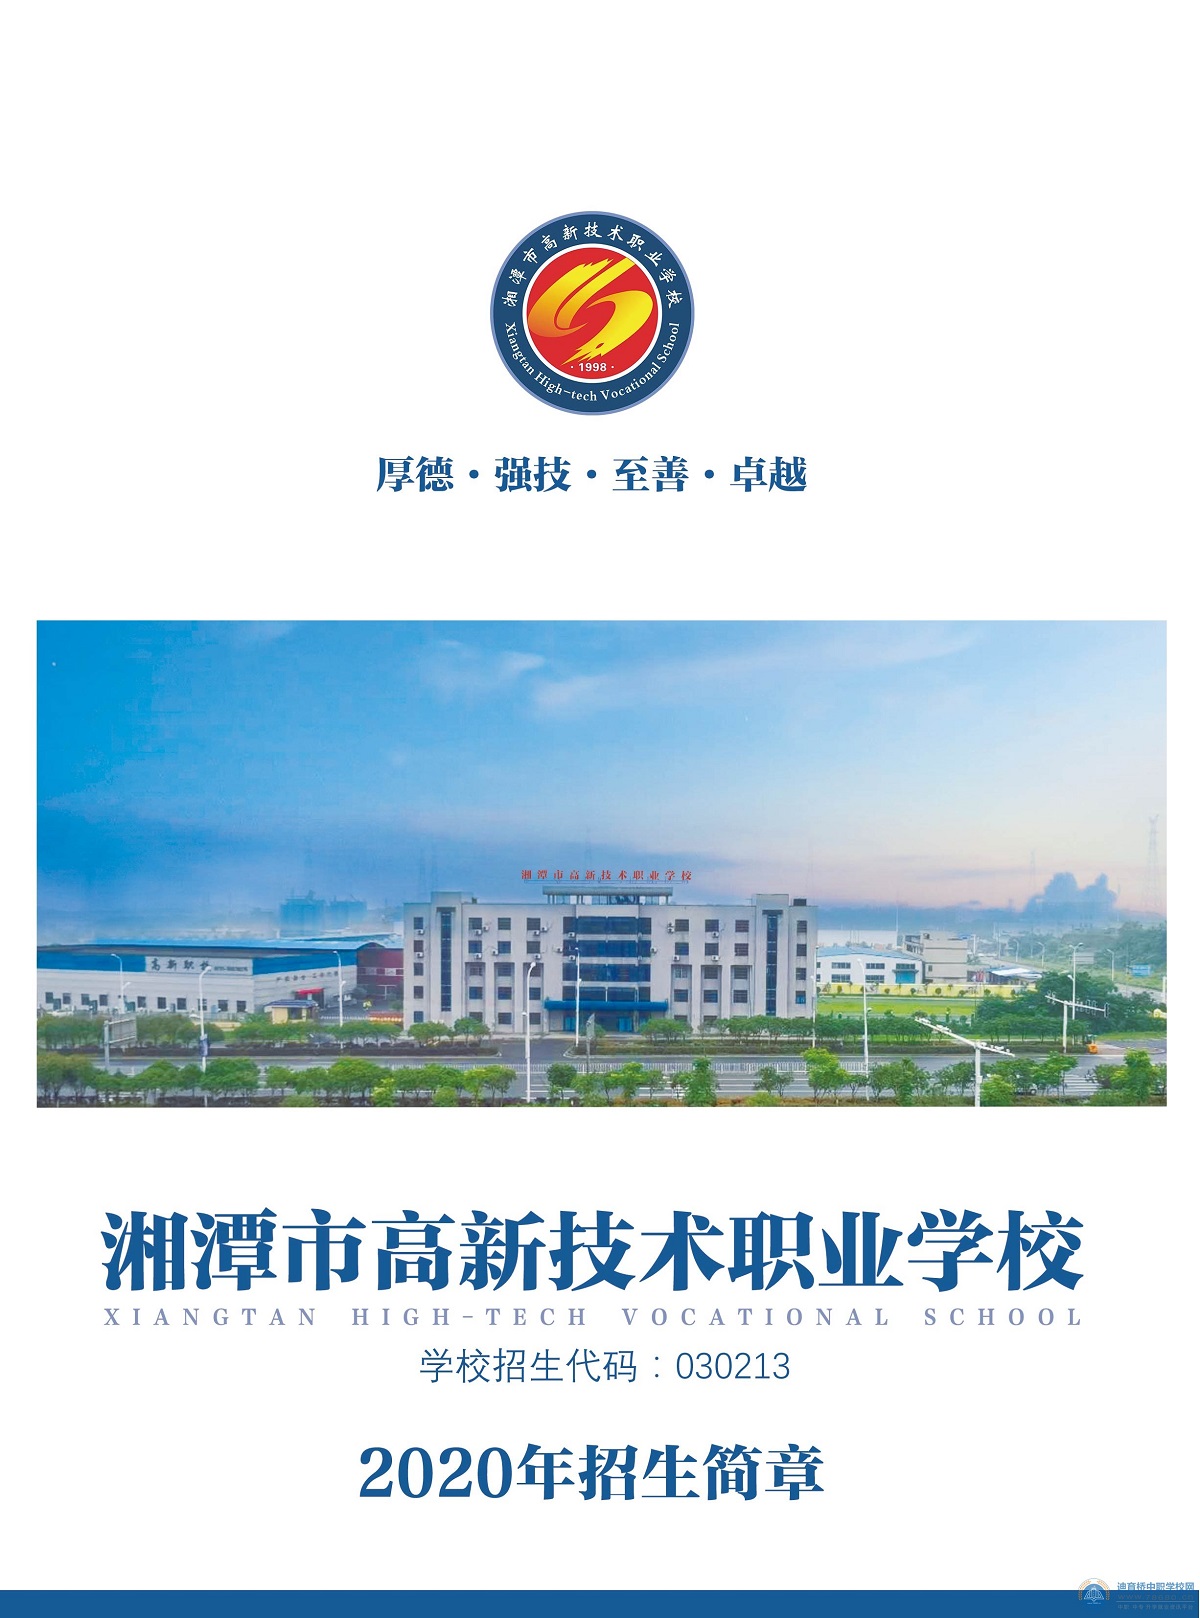 湘潭市高新技术职业学校2020年招生简章